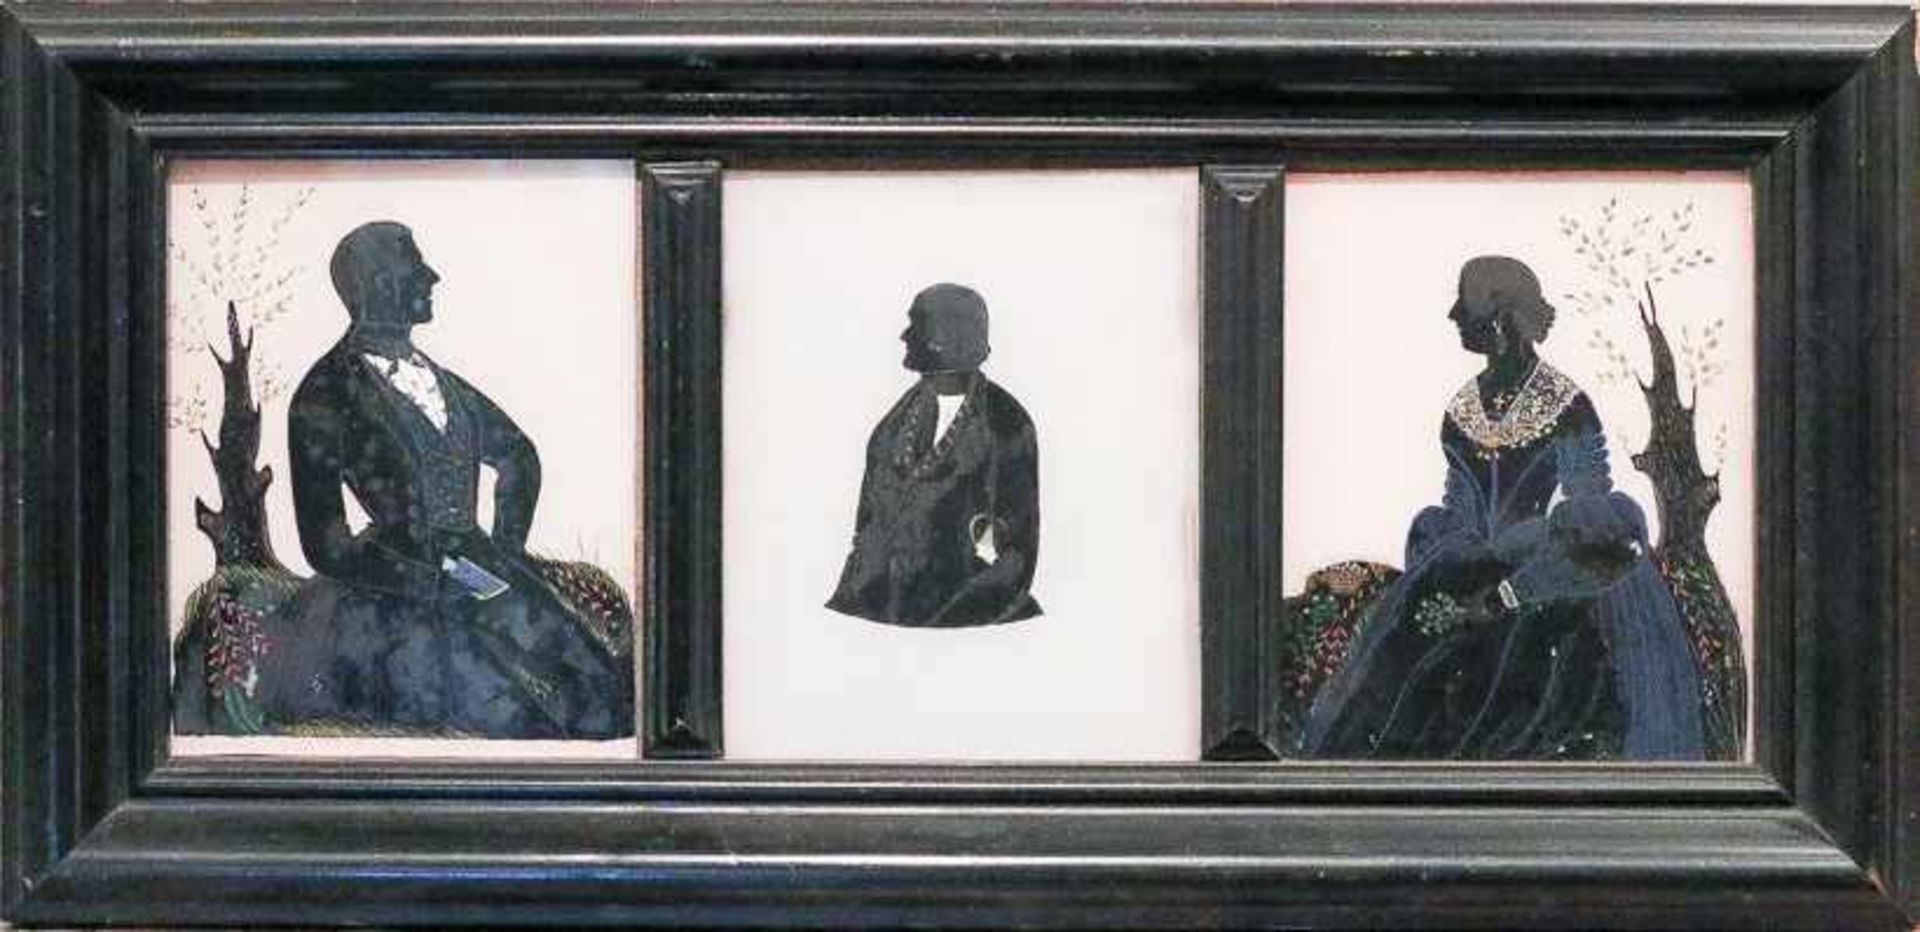 Hinterglasmaler (England, Mitte 19. Jh.) Ehepaar und einzelner Herr in dreifacher Sammelrahmung.